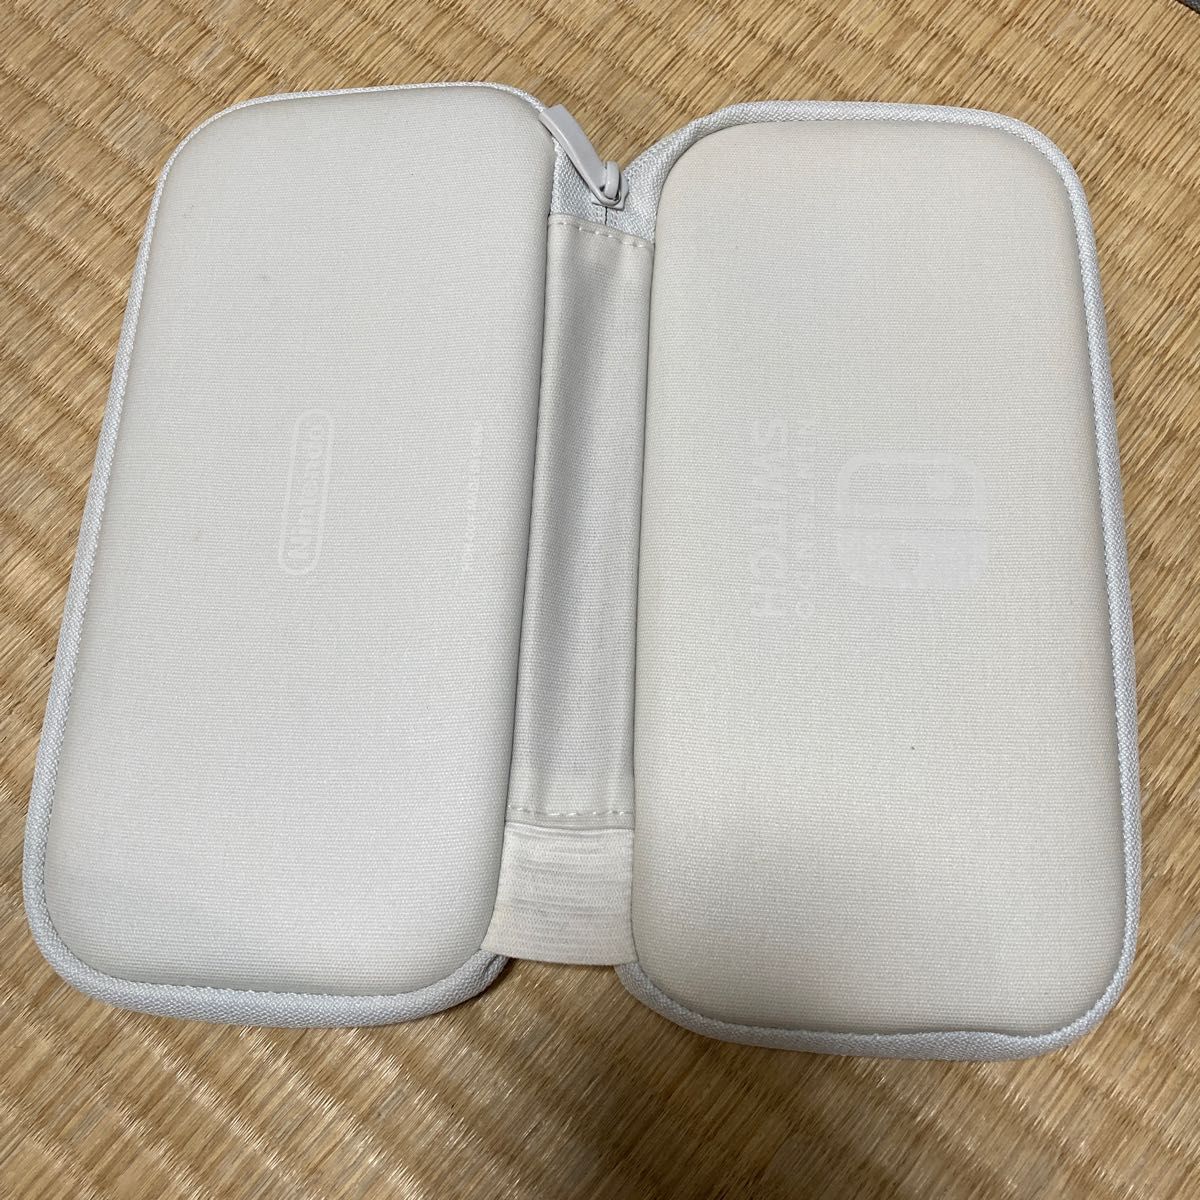 中古】Nintendo Switch Liteグレー/キャリングケース付き エンタメ 